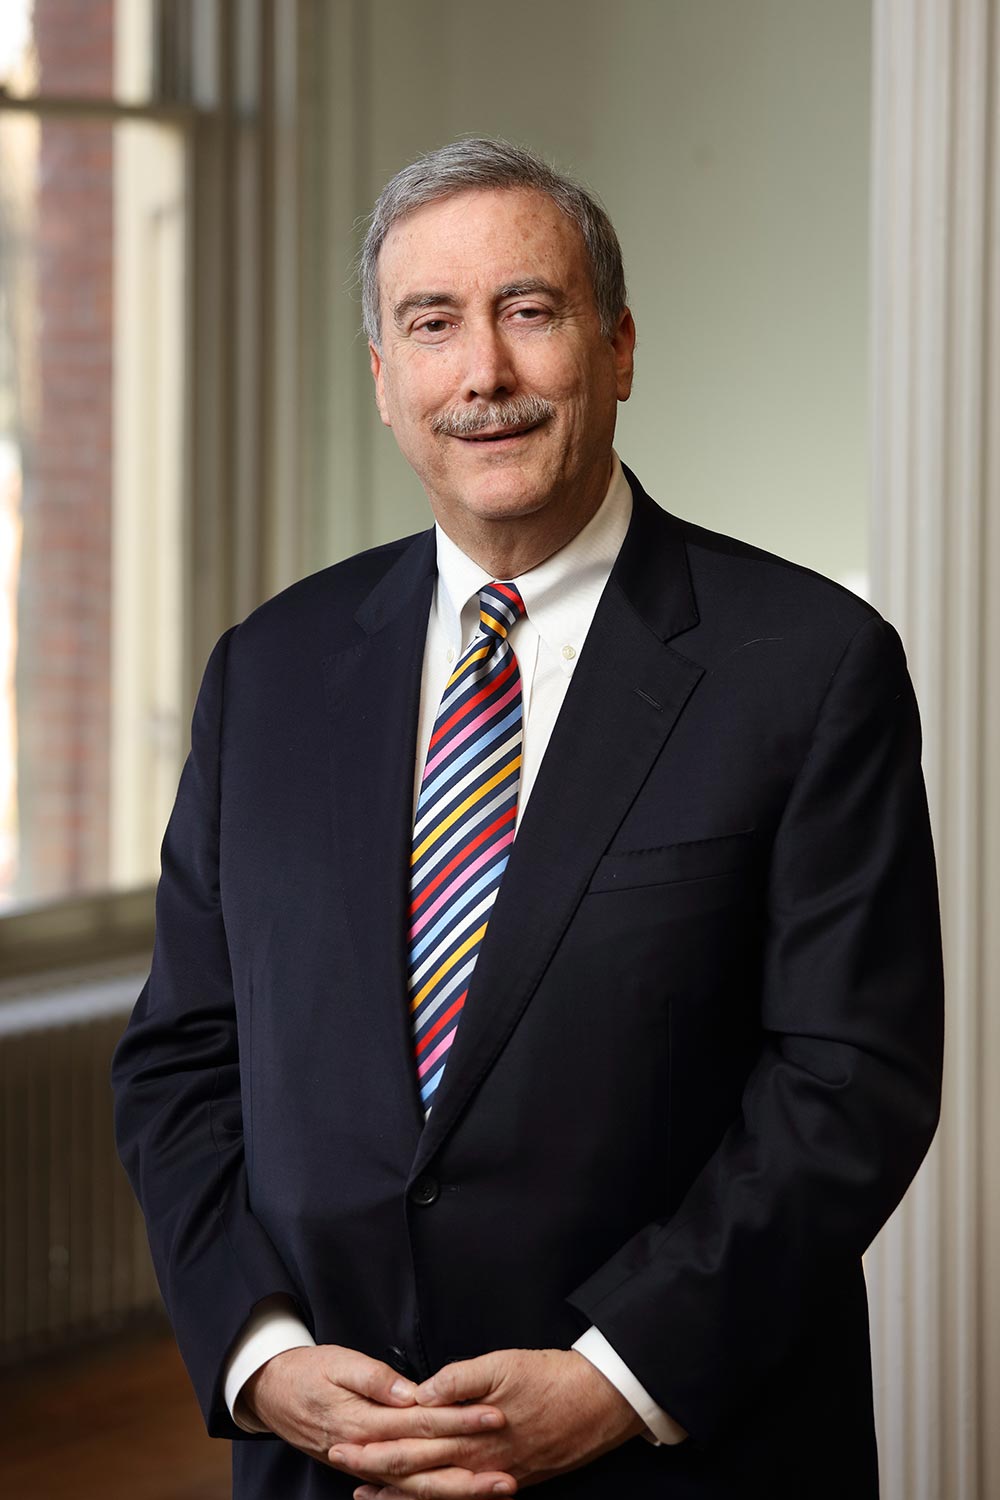 Dr. Larry J. Sabato, Director